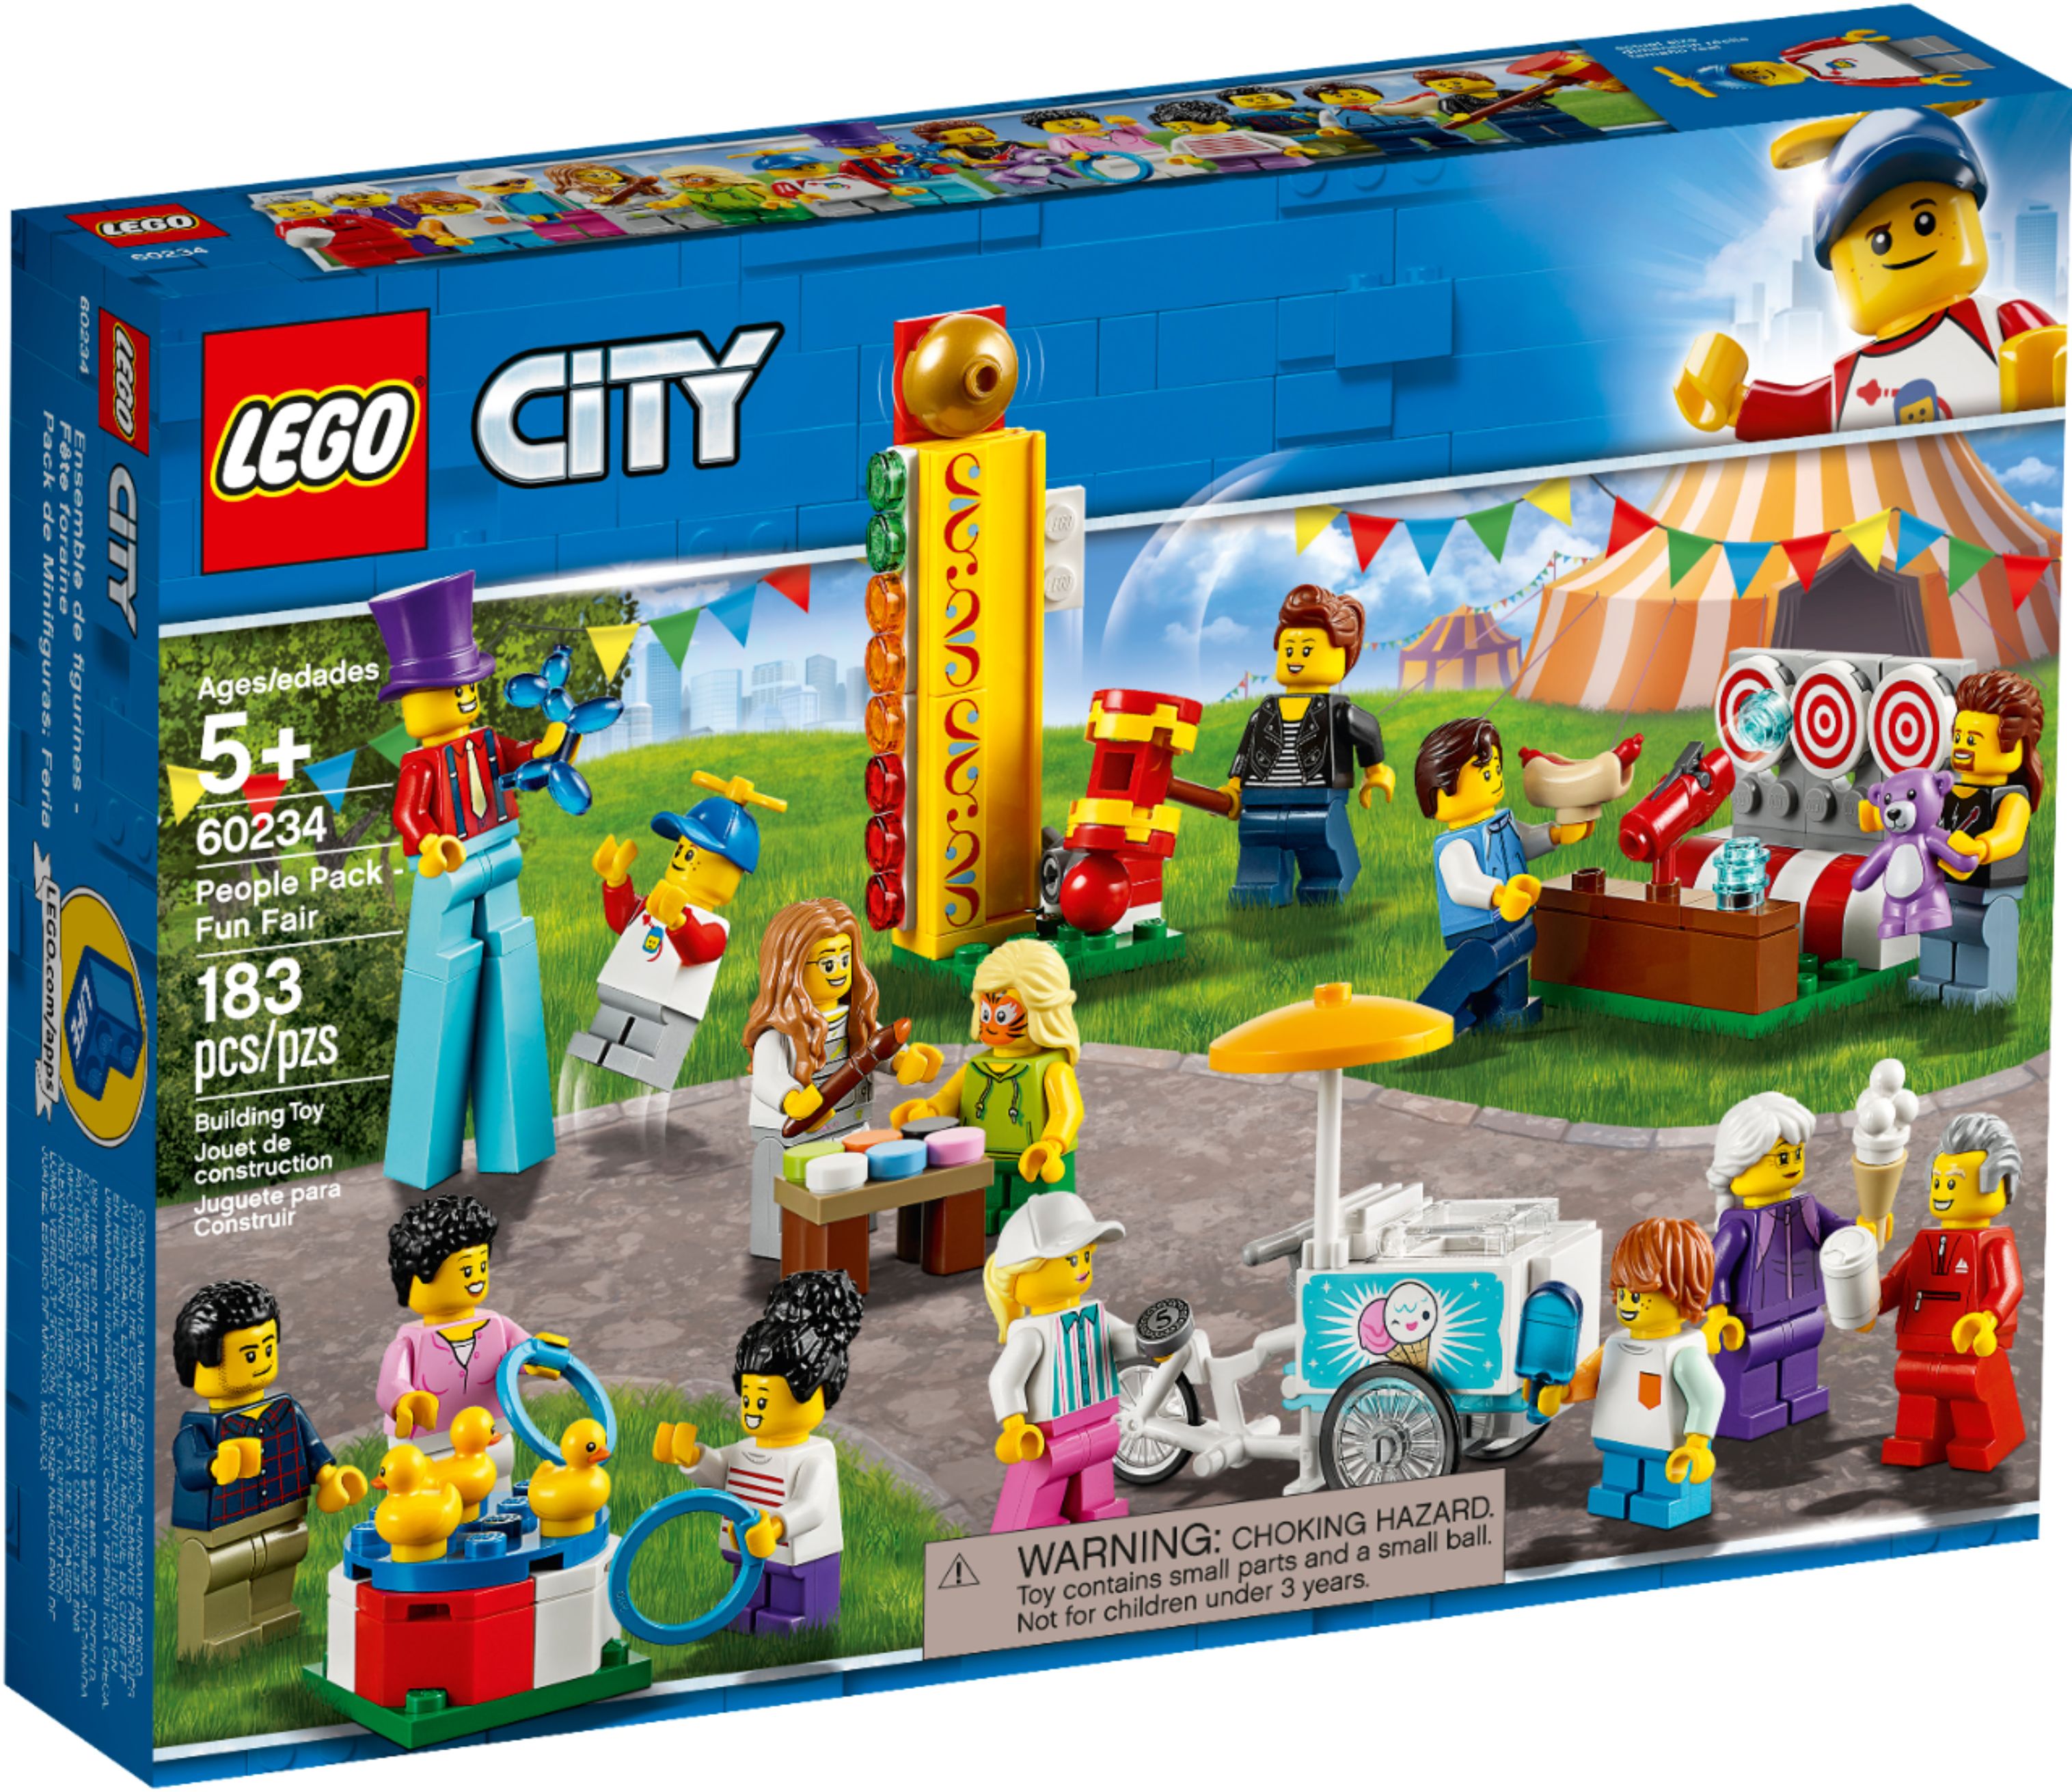 LEGO City People Pack Fun Fair 60234 6251768 - Best Buy